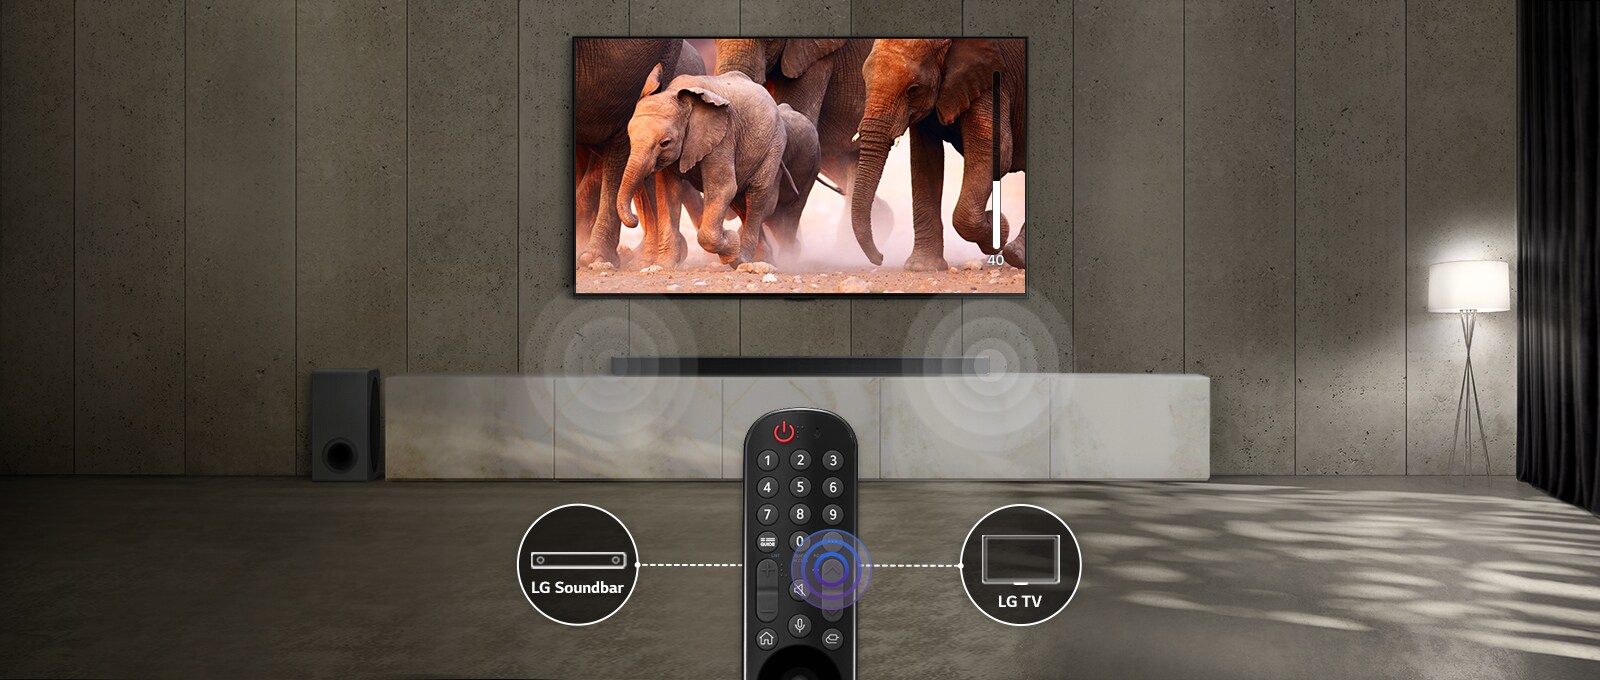 Et tv i et rum med svagt lys viser billeder af elefanter, der passerer forbi. Og der er en lydeffekt på soundbaren under tv'et. Nederst på billedet er der en tv-fjernbetjening, og soundbaren og ikonet på tv'et er forbundet til venstre og højre på fjernbetjeningen.